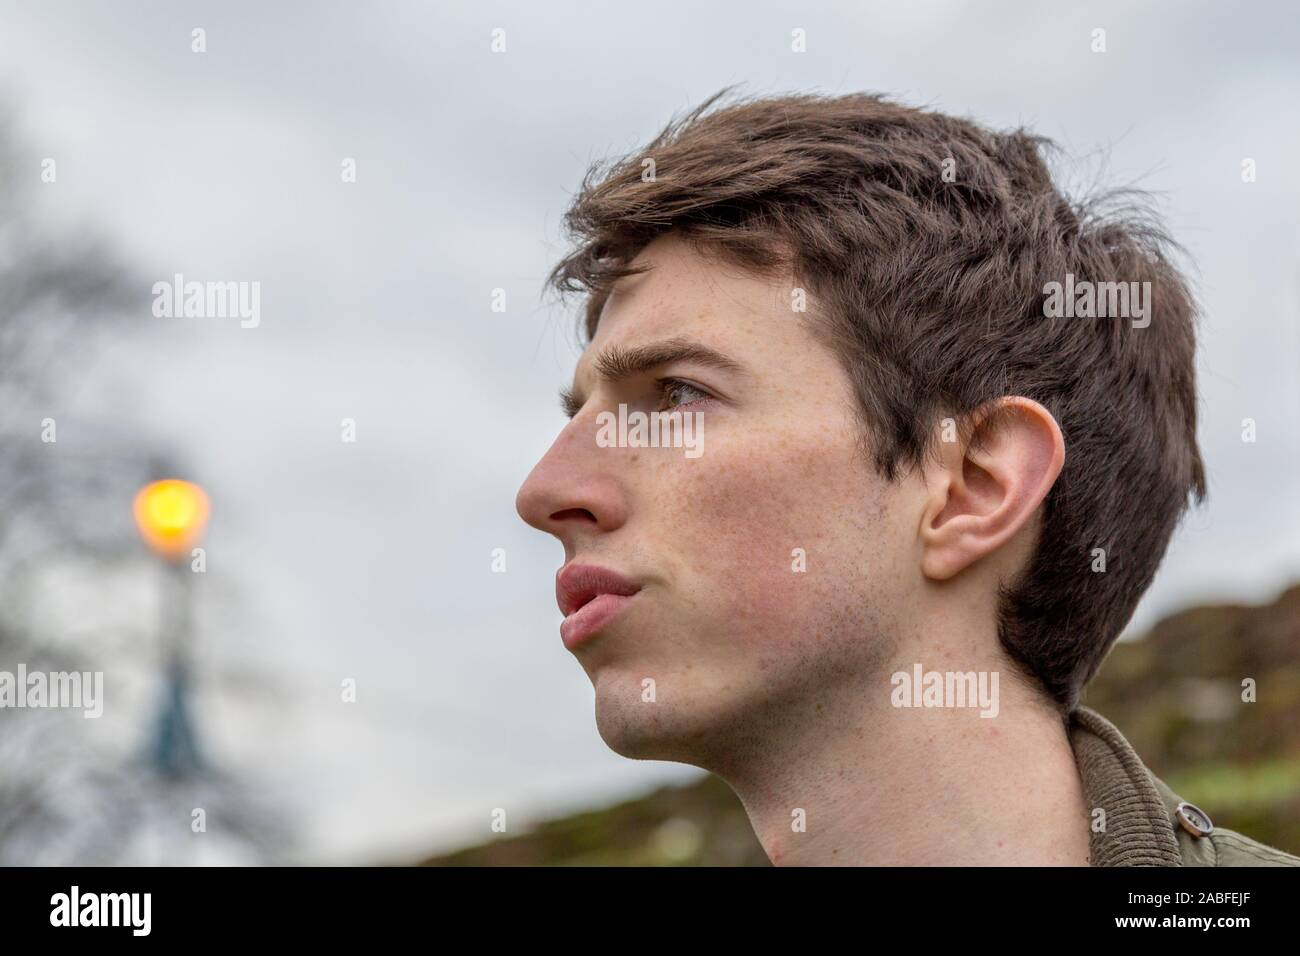 Un hombre joven en su adolescencia o principios del veinte stands al aire libre con una grave expresión centrada como se ve en la distancia. Foto de stock